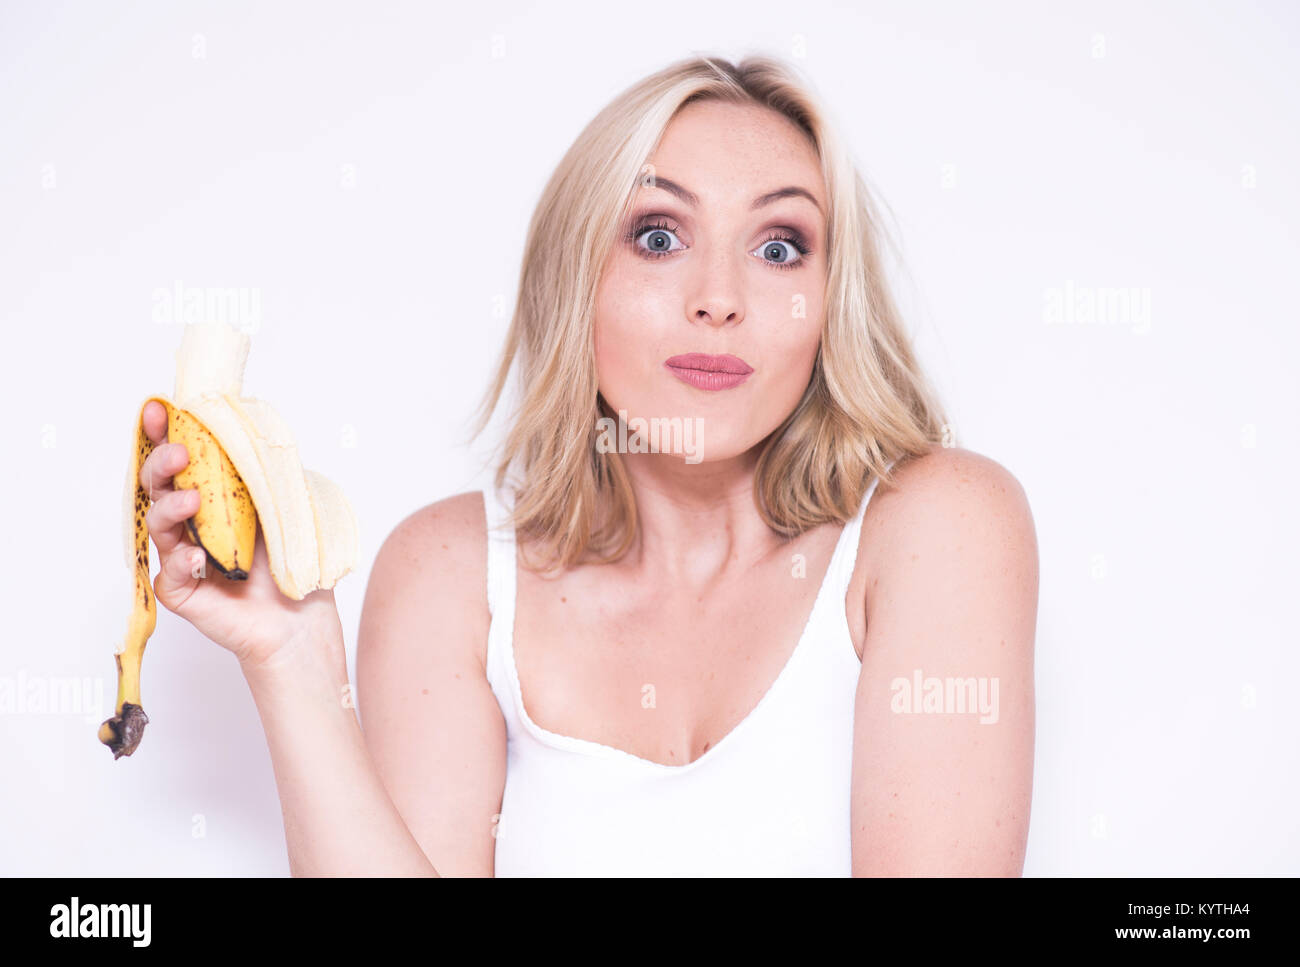 Très jolie jeune femme manger une banane Photo Stock - Alamy